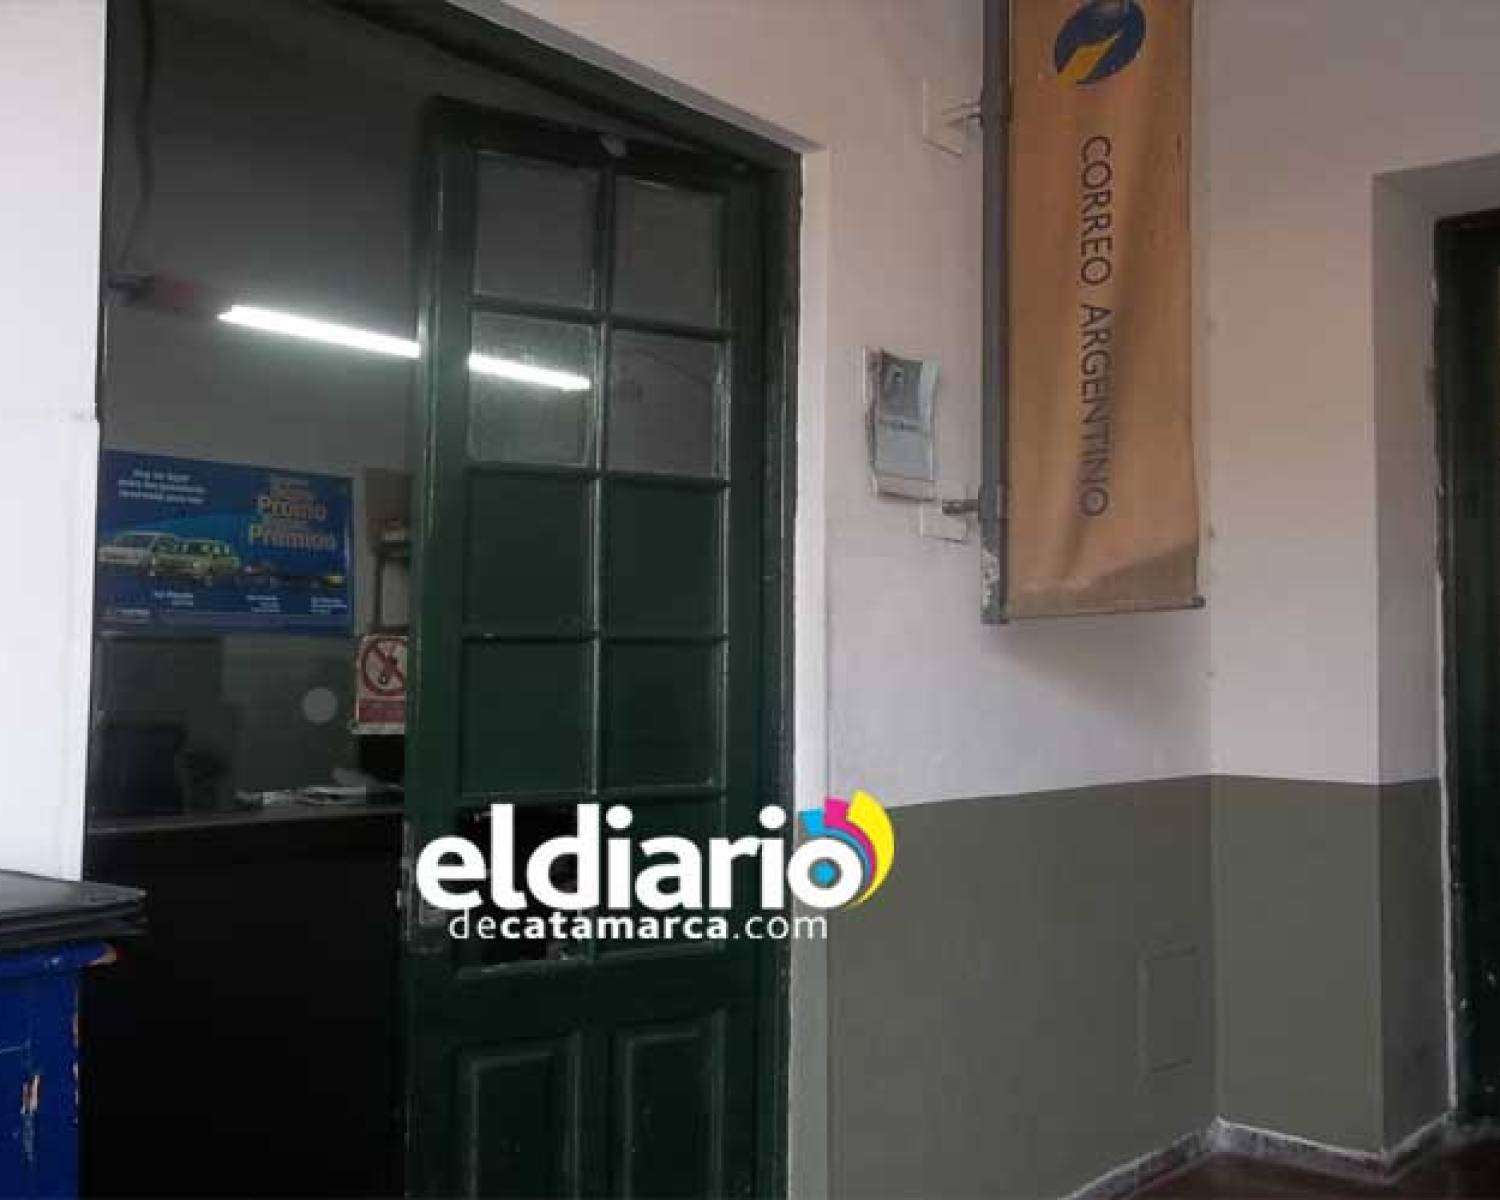 Siguen los despidos: 5 empleados del Correo Argentino en Catamarca fueron cesanteados  